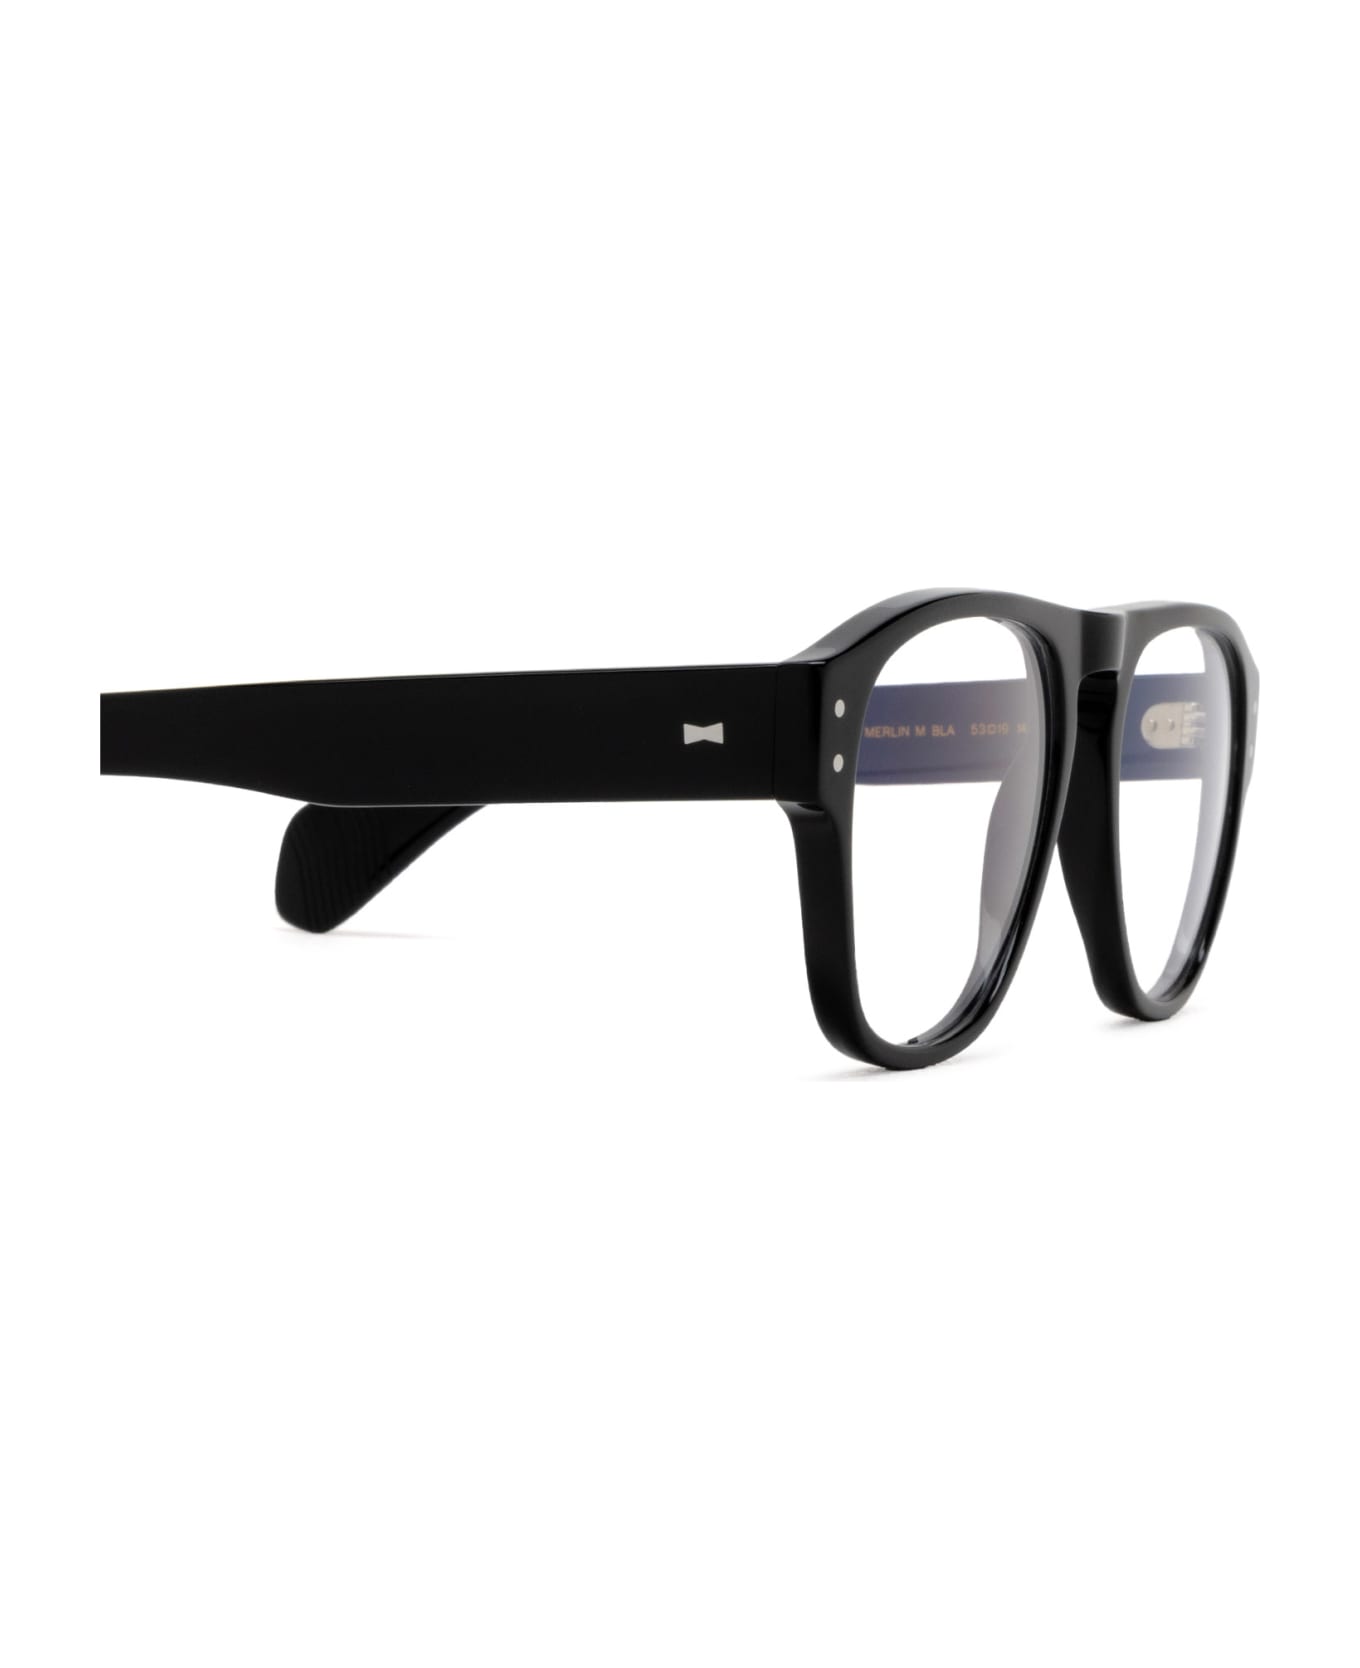 Cubitts Merlin Black Glasses - Black アイウェア